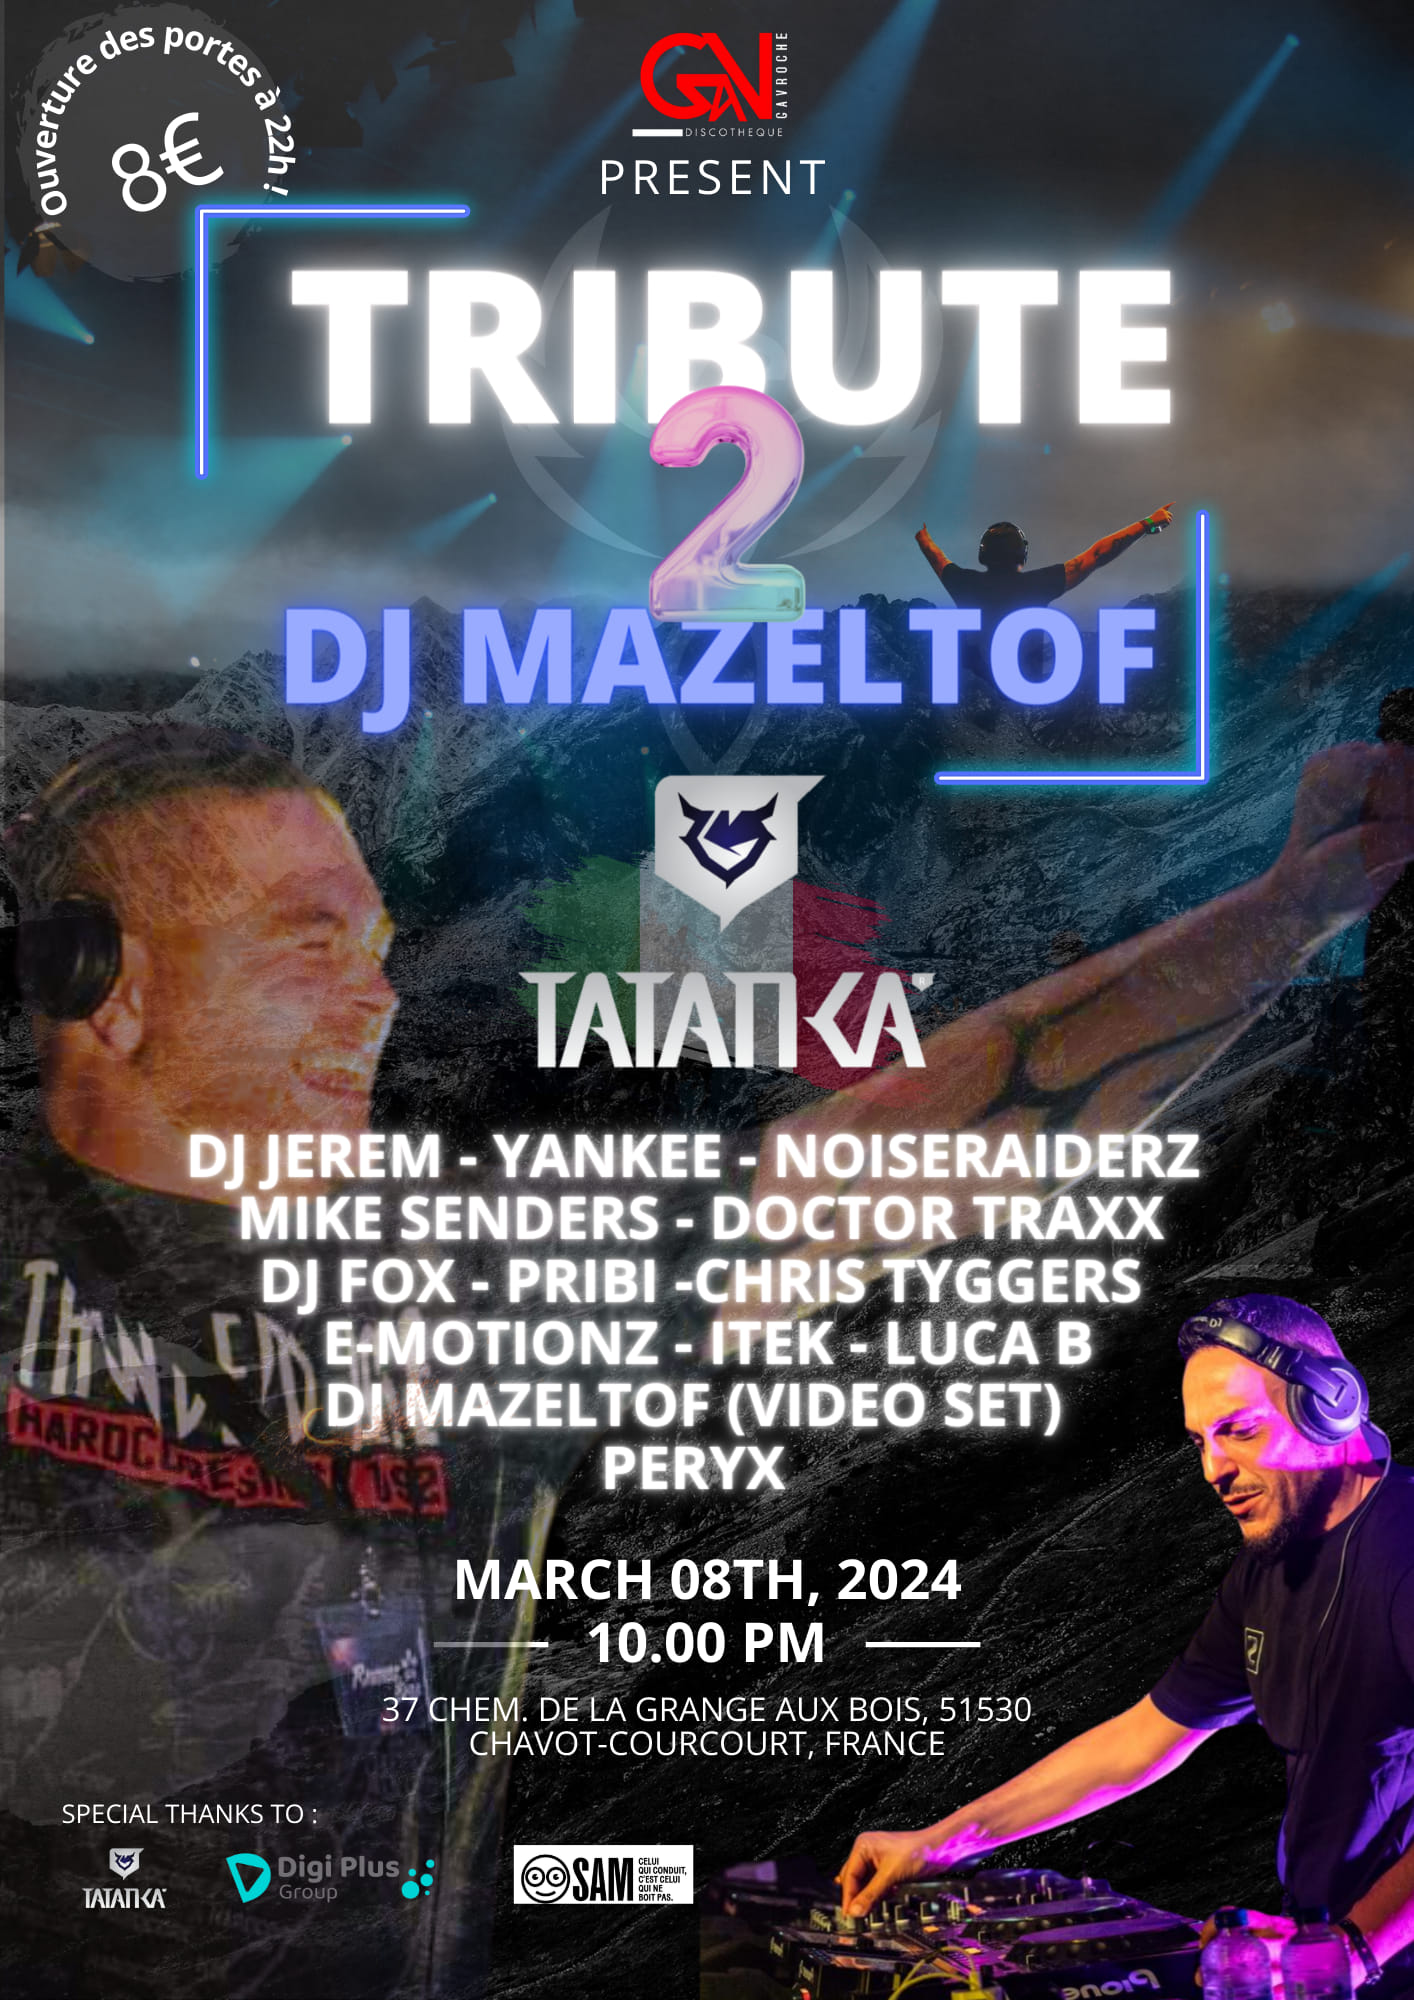 Tribute 2 Dj Mazeltof